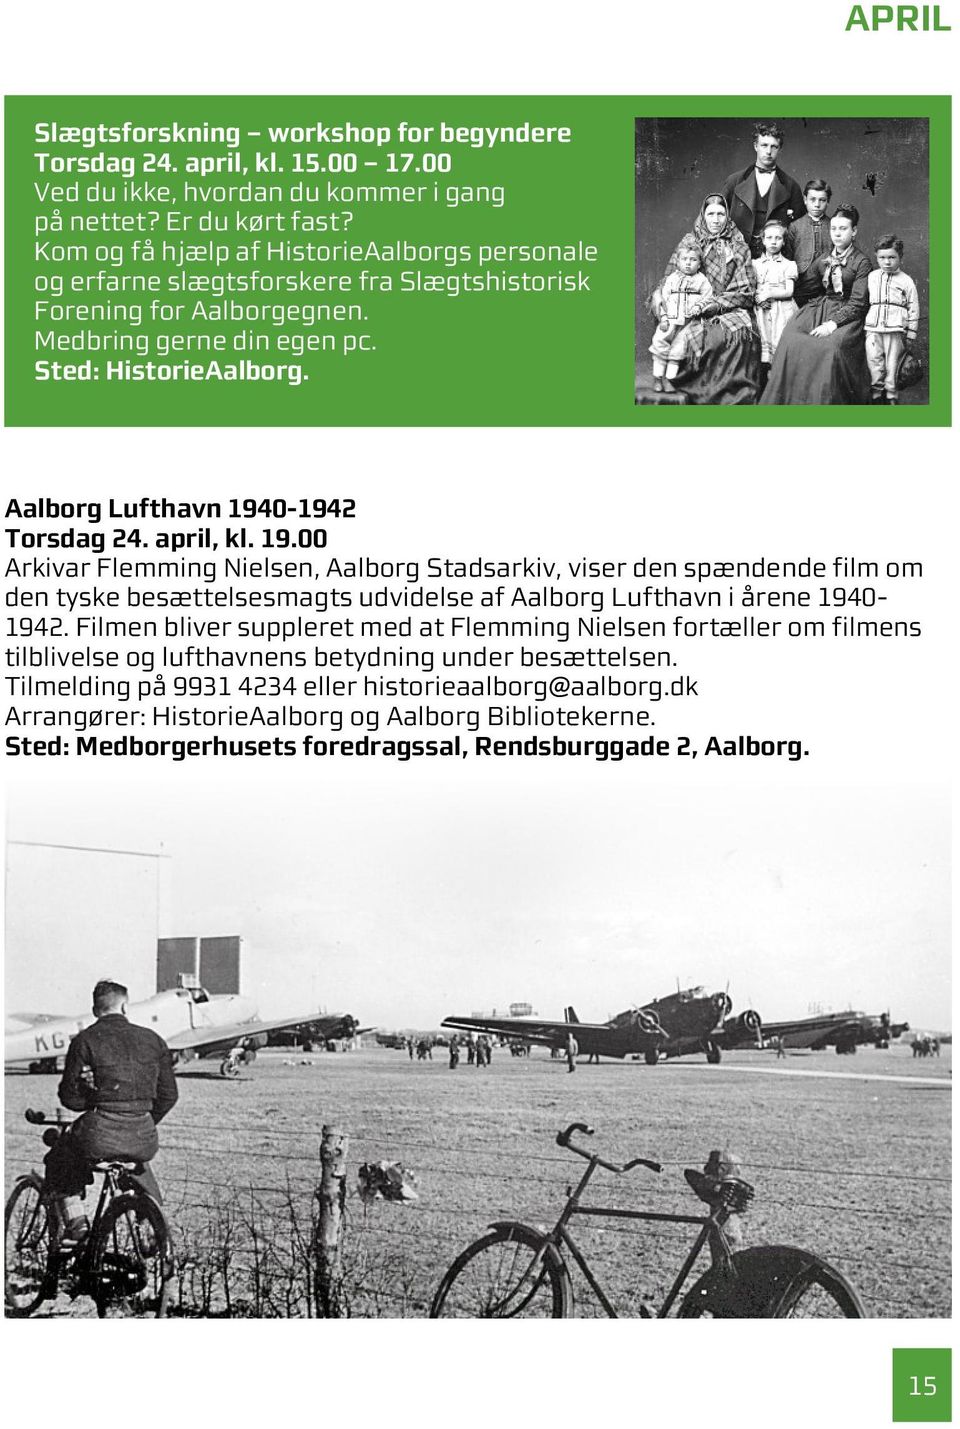 0-1942 Torsdag 24. april, kl. 19.00 Arkivar Flemming Nielsen, Aalborg Stadsarkiv, viser den spændende film om den tyske besættelsesmagts udvidelse af Aalborg Lufthavn i årene 1940-1942.